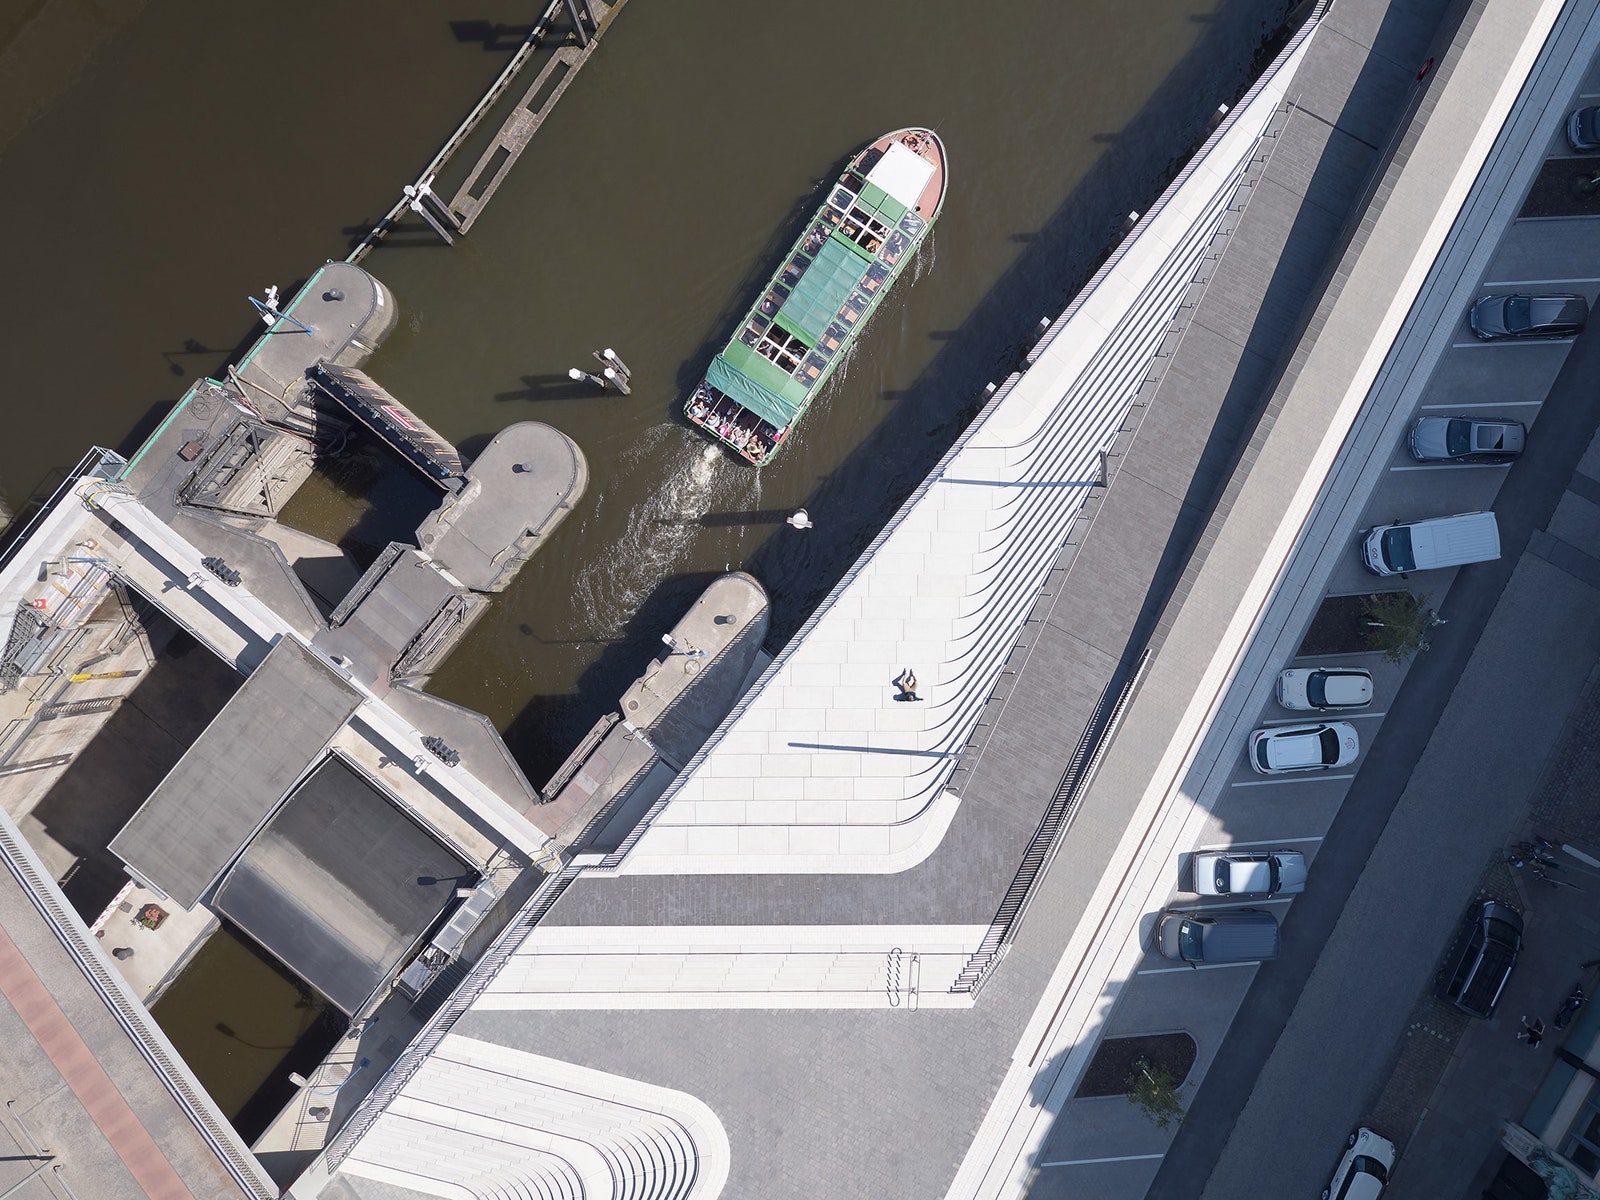 Защита от наводнений набережная по проекту Zaha Hadid Architects в Гамбурге